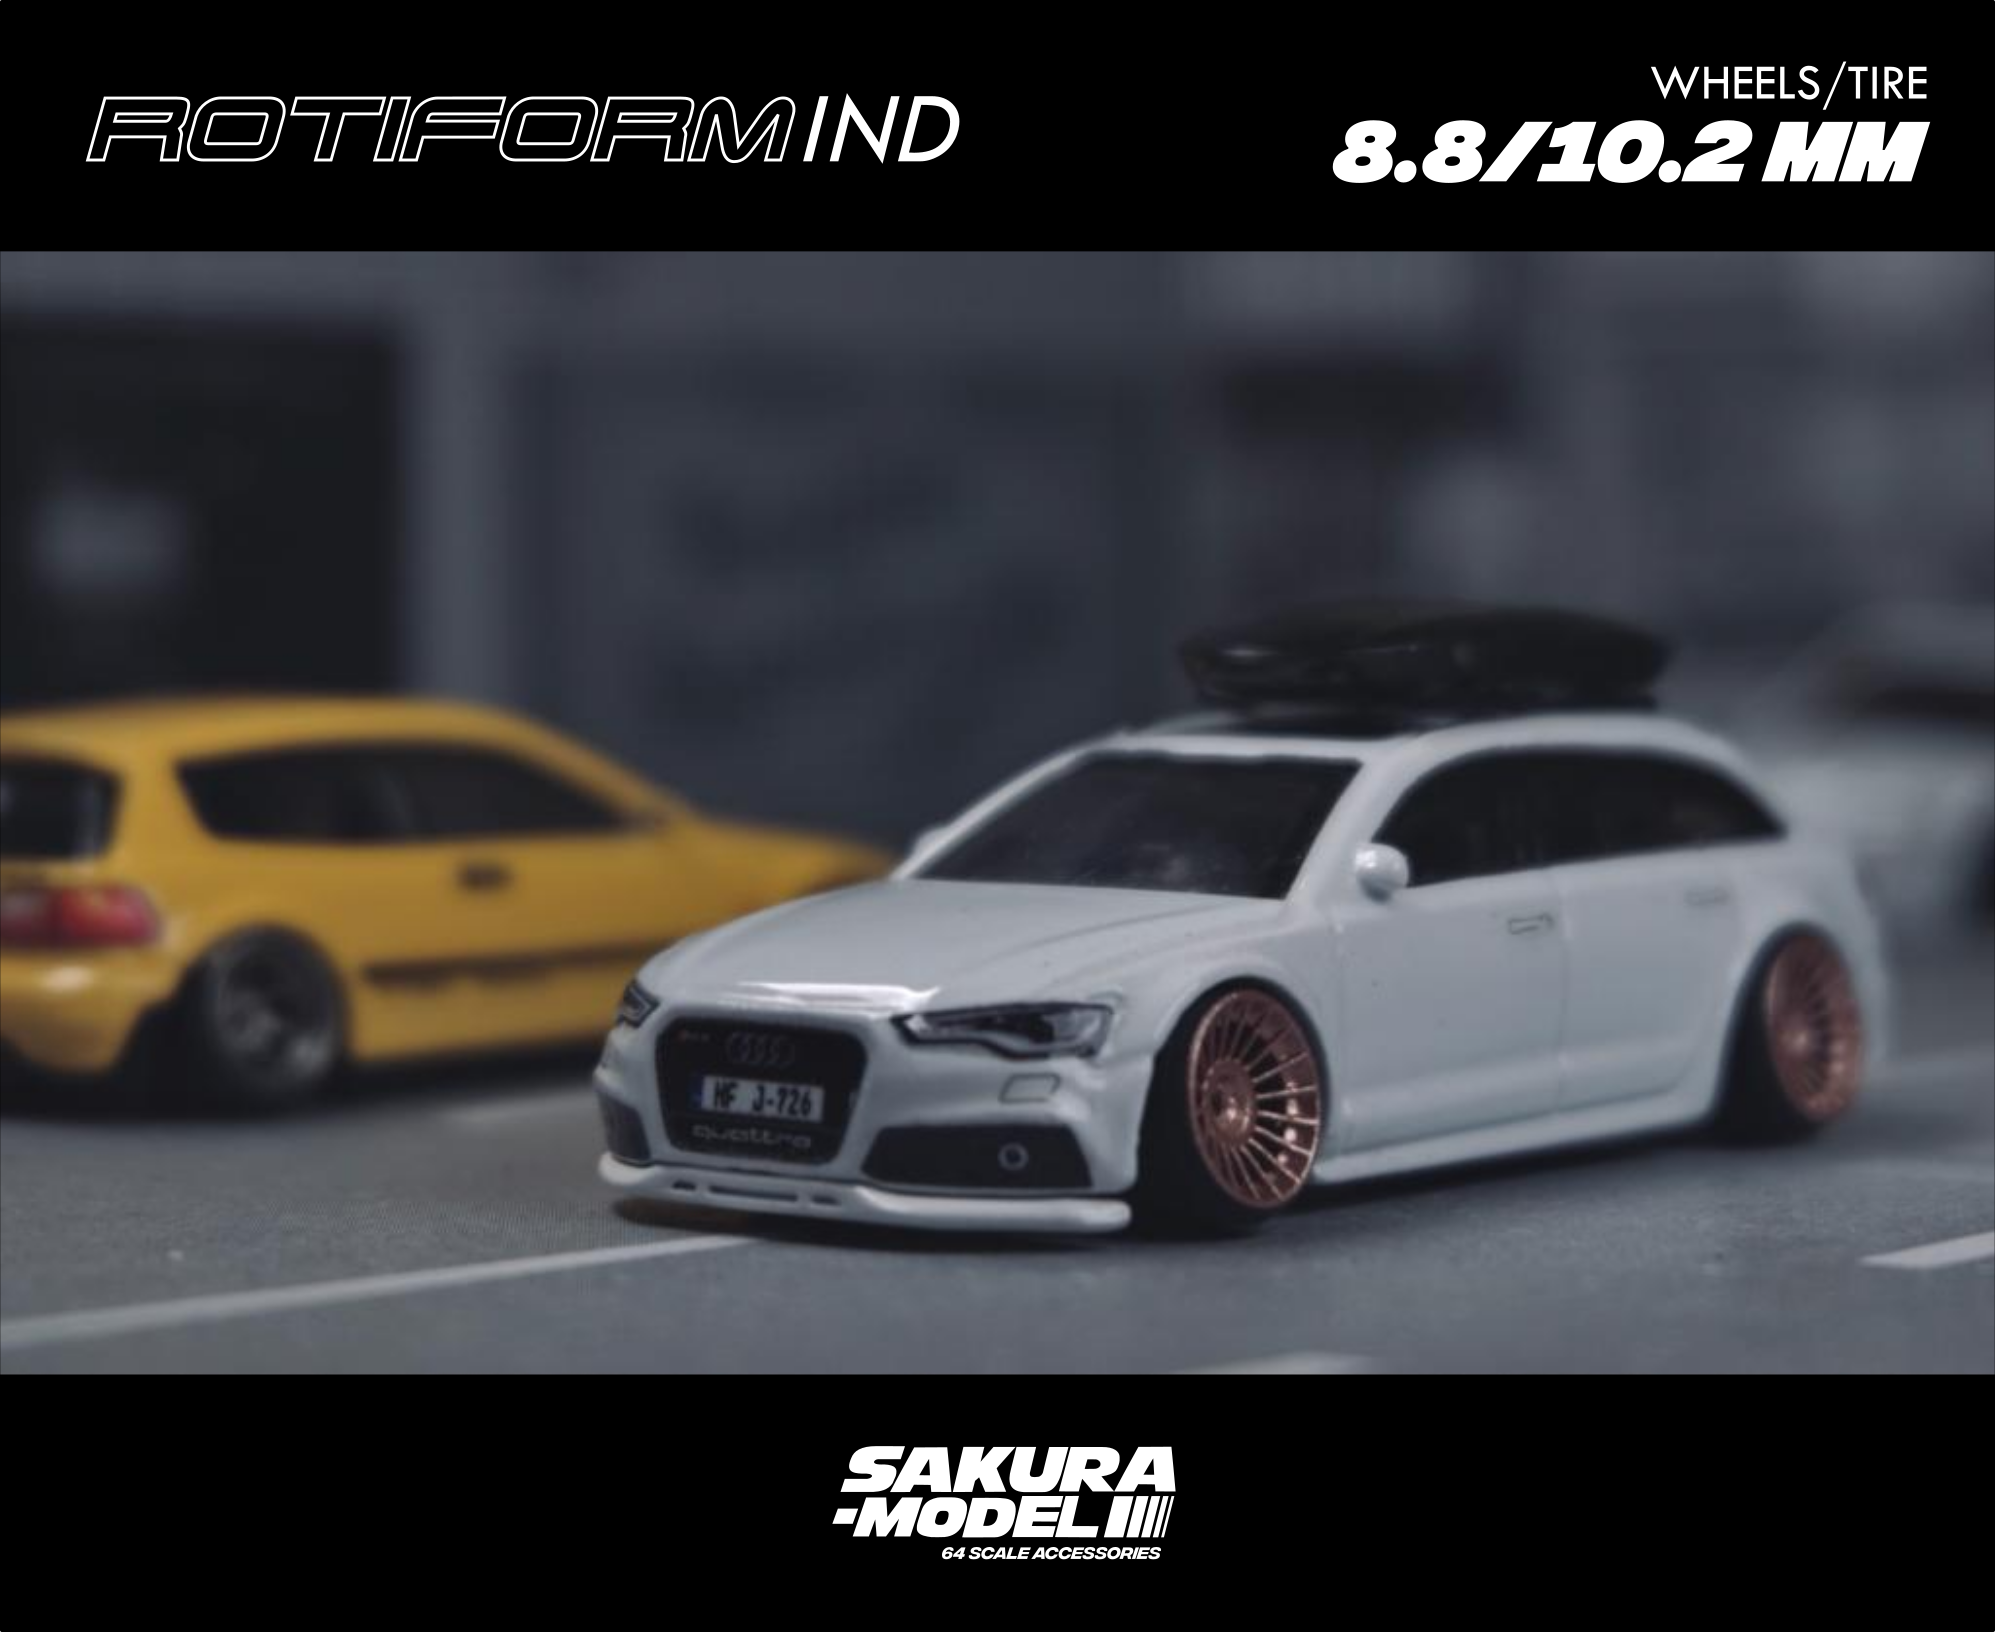 Custom wheels 64 scale model Rota Kyusha - Full resin – Sakuramodel